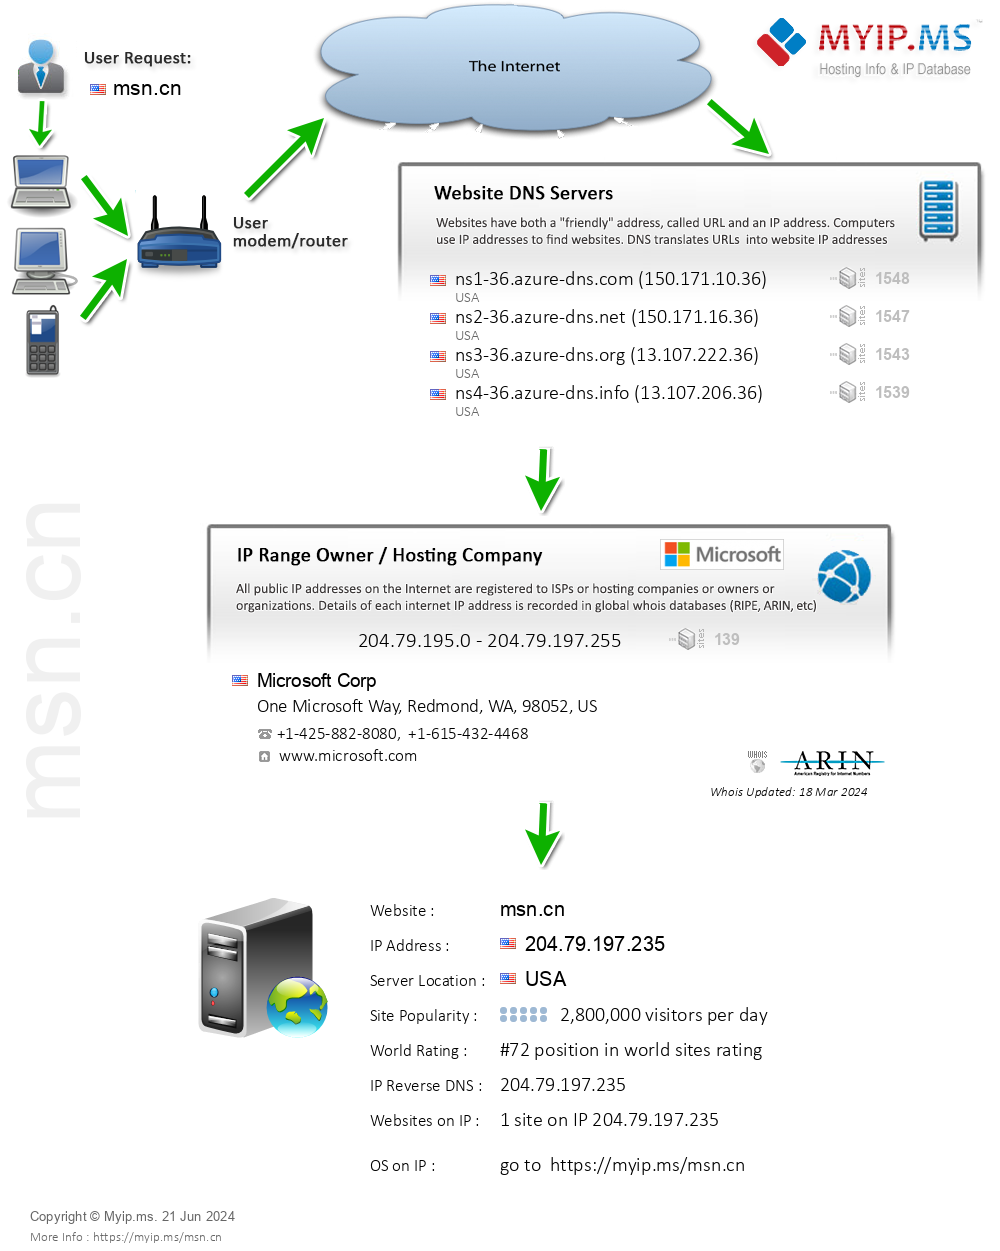 Msn.cn - Website Hosting Visual IP Diagram